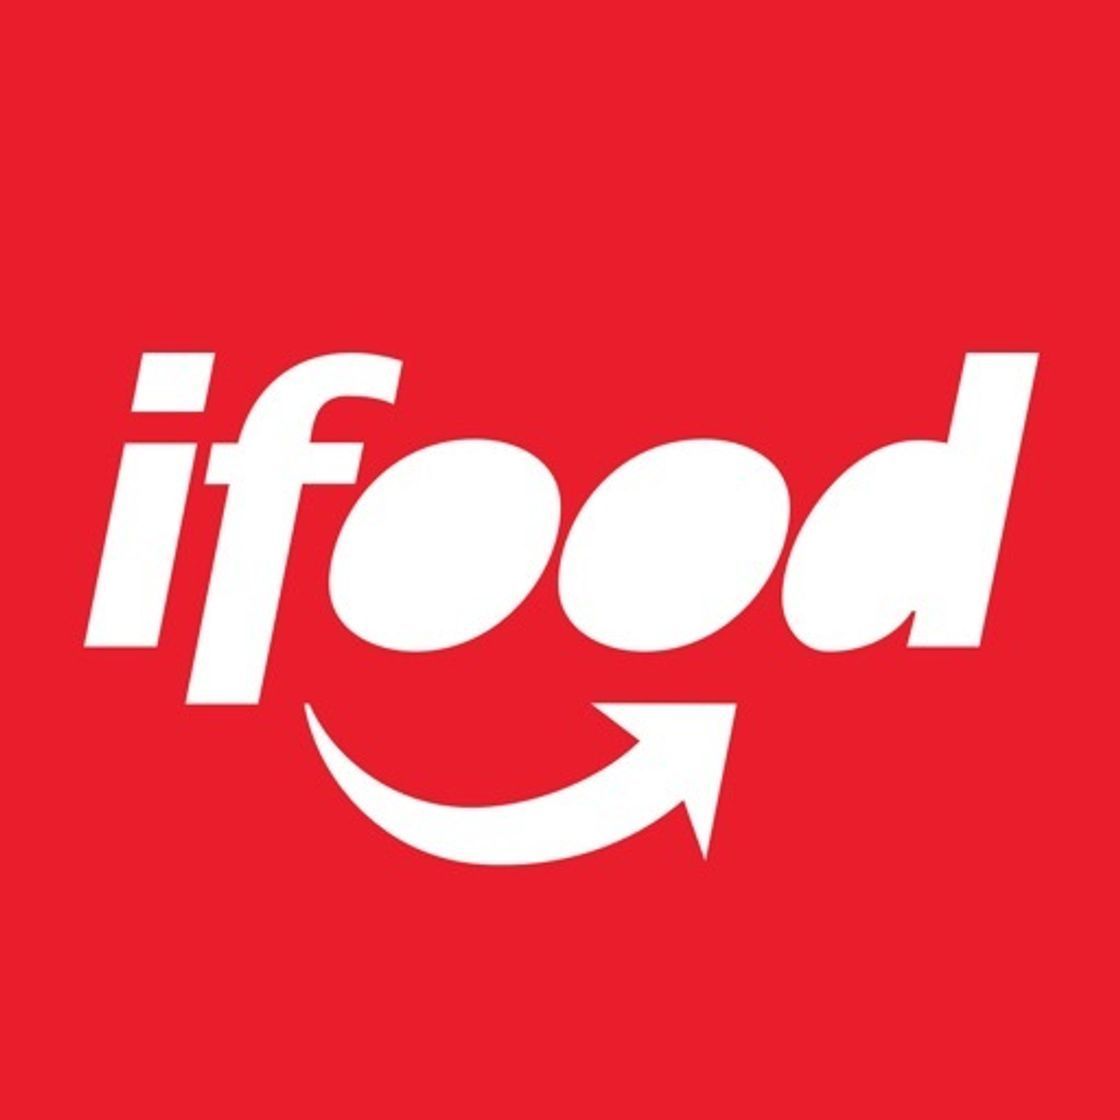 iFood - Pedir comida e mercado